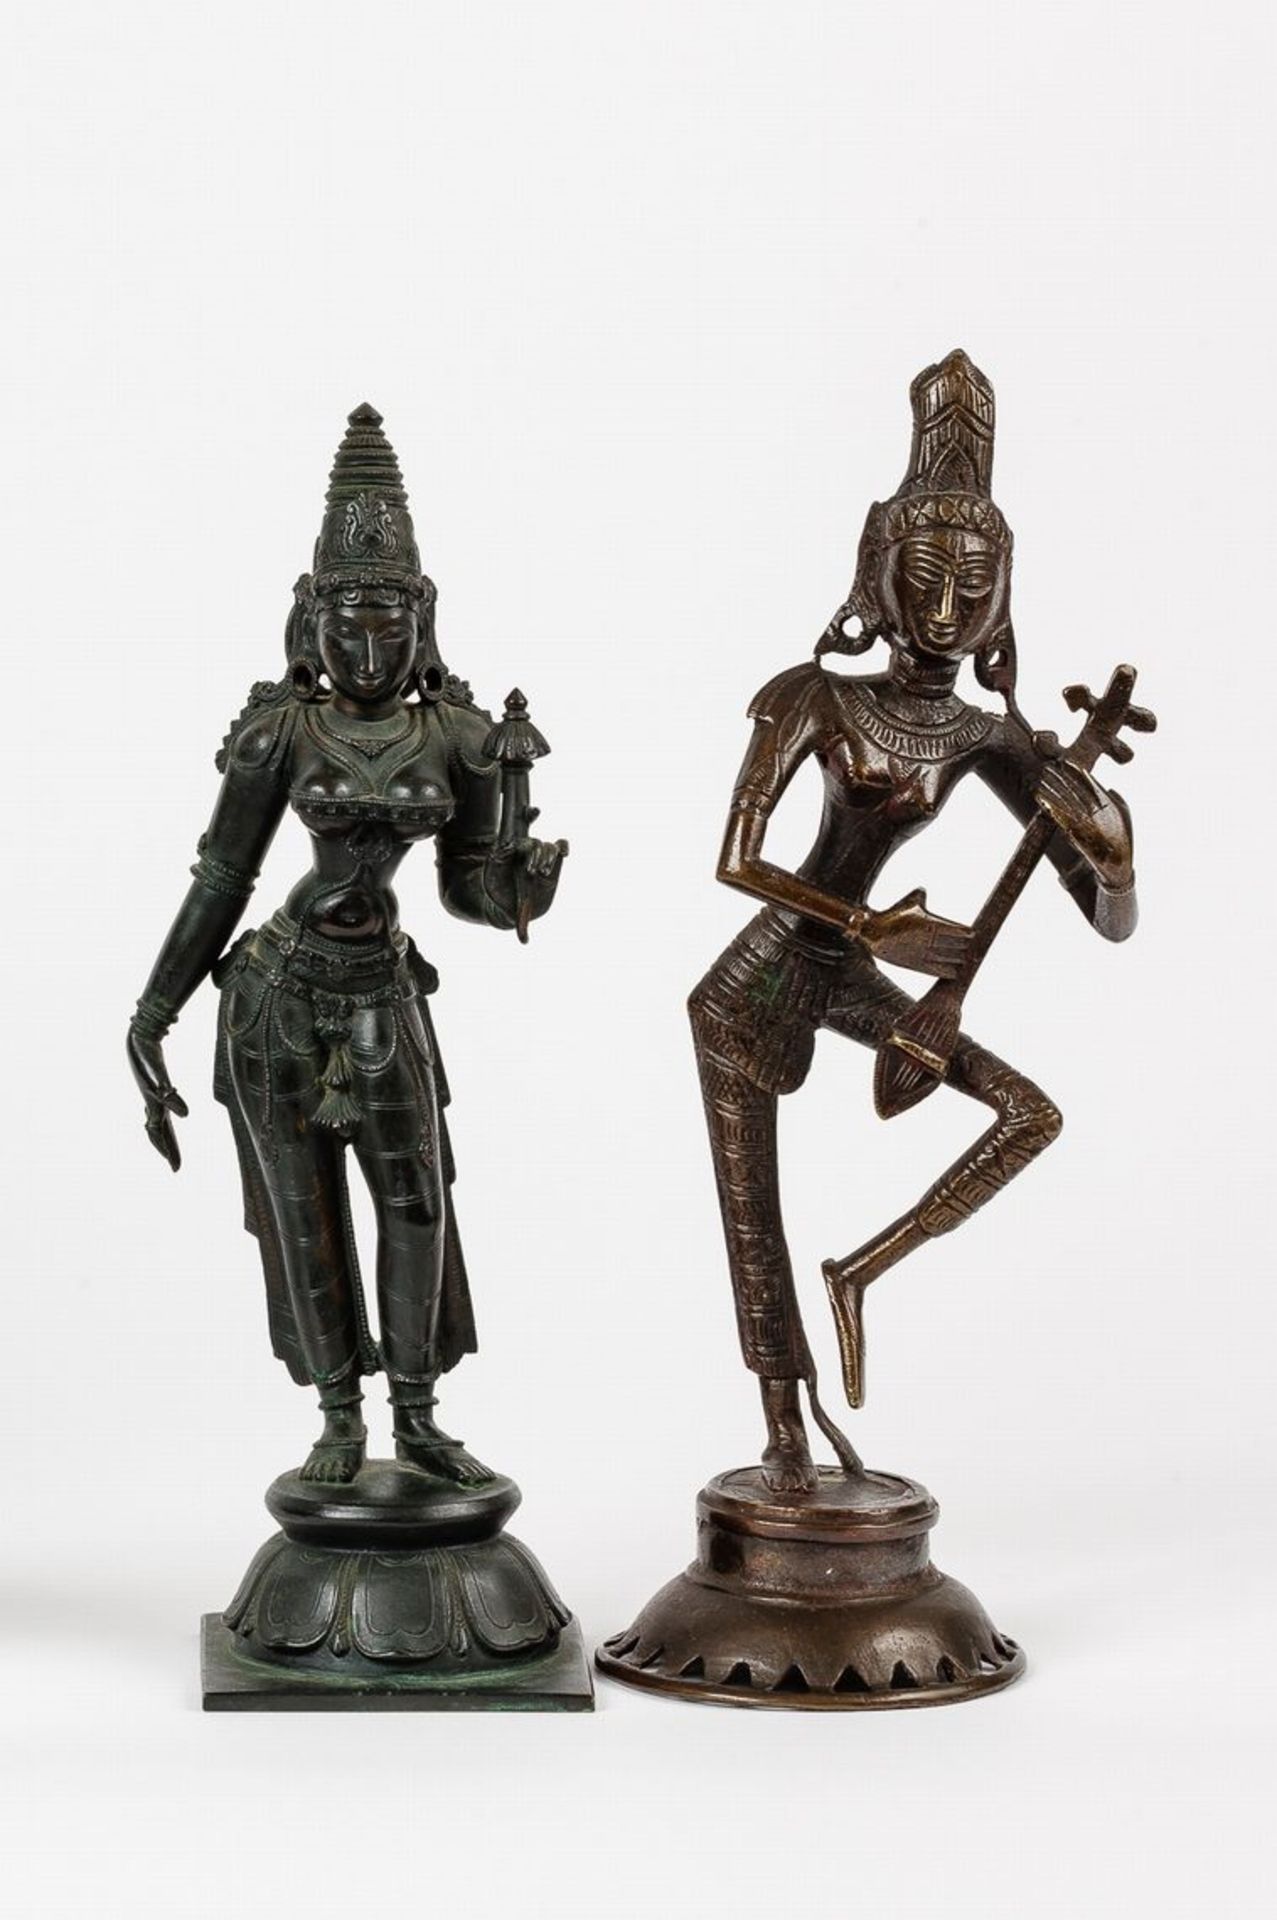 Zwei GottheitenBronze. Jeweils auf Sockel stehend. Eine mit angewinkeltem linken Bein eine Sitar